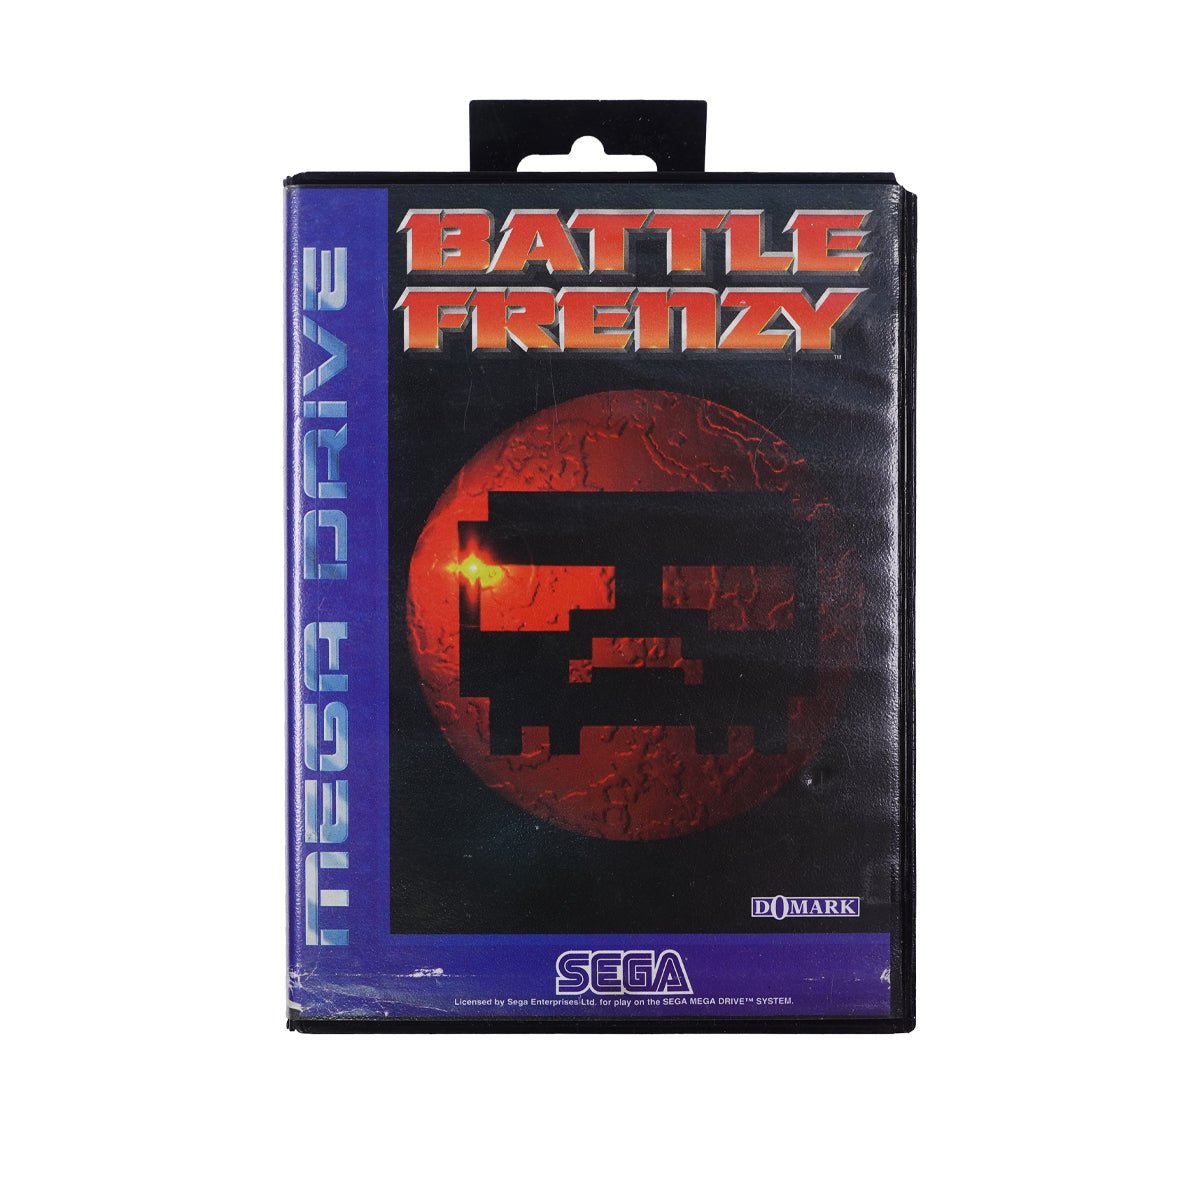 (Pre-Owned) Battle Frenzy - Sega - Store 974 | ستور ٩٧٤